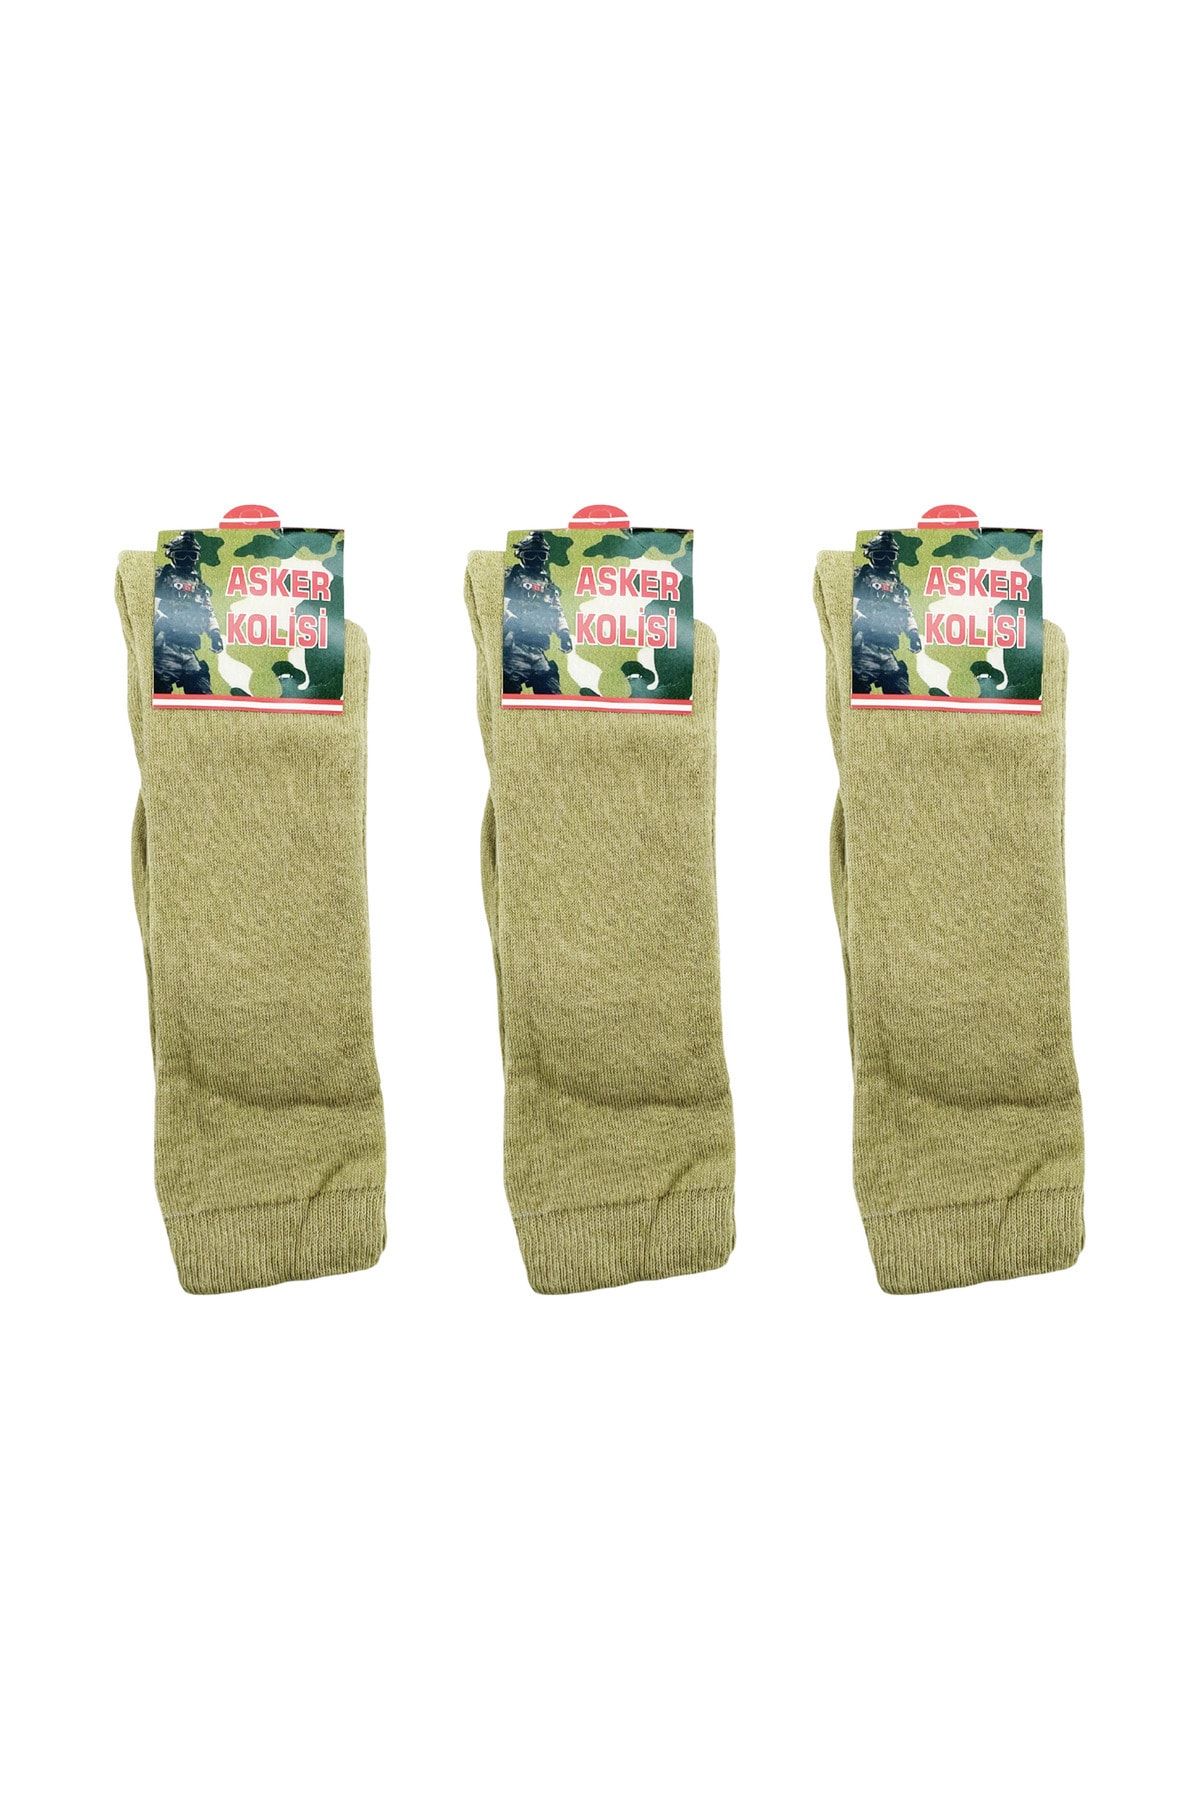 Asker Kolisi Kışlık Askeri Havlu Çorap - Asker Malzemeleri 3'lü